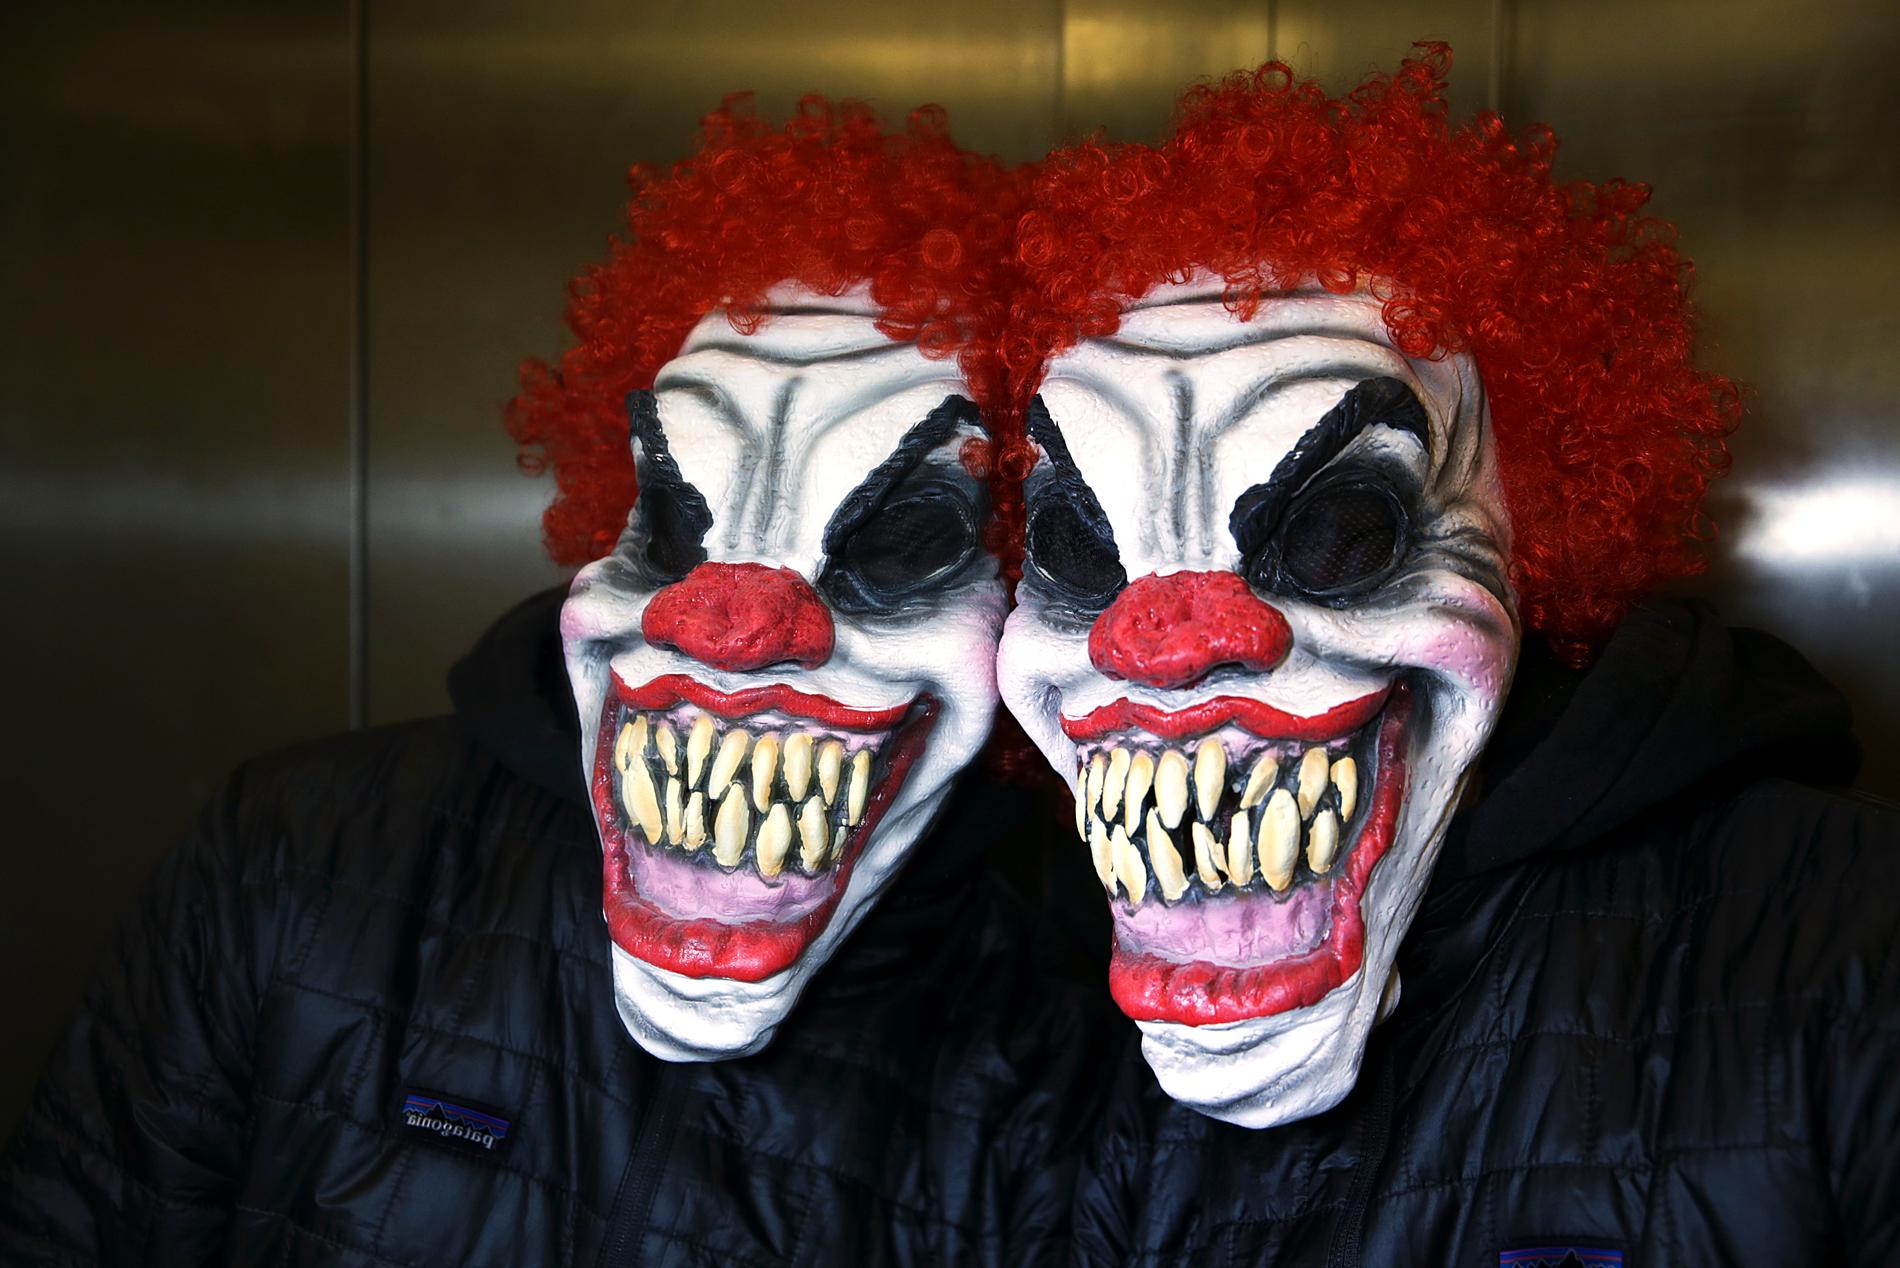 En elak clown i Lisebergs reklamfilm inför höstens halloweensäsong har fått flera annonsplatser att reagera. Arkivbild.